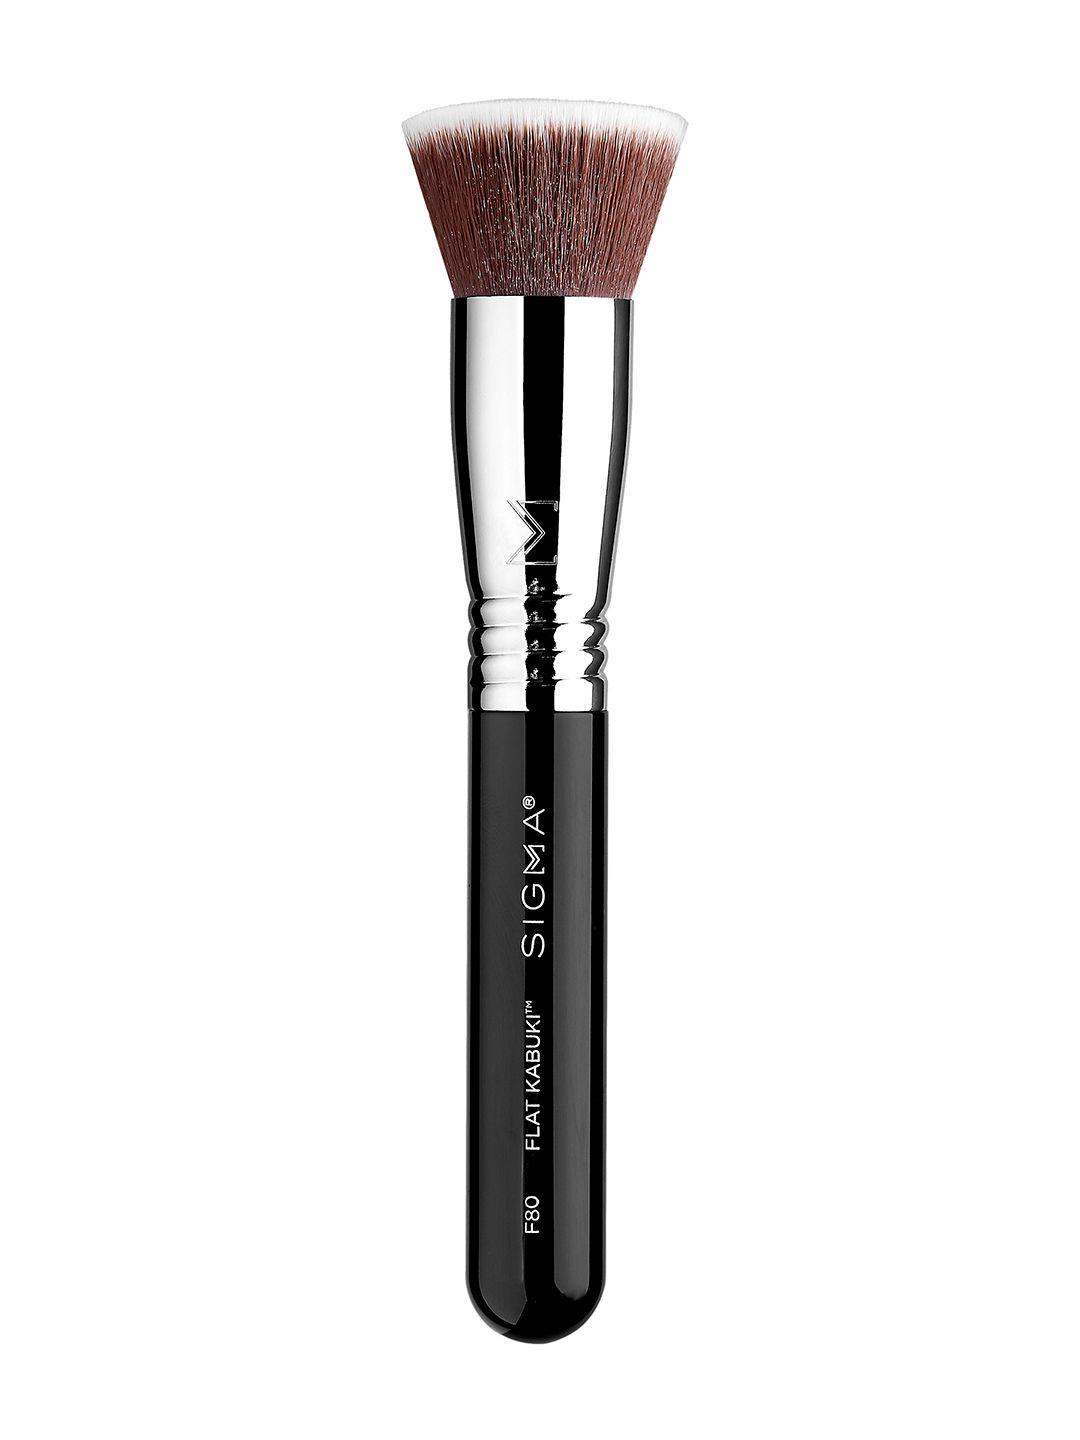 sigma beauty flat kabuki foundation brush f80 - black